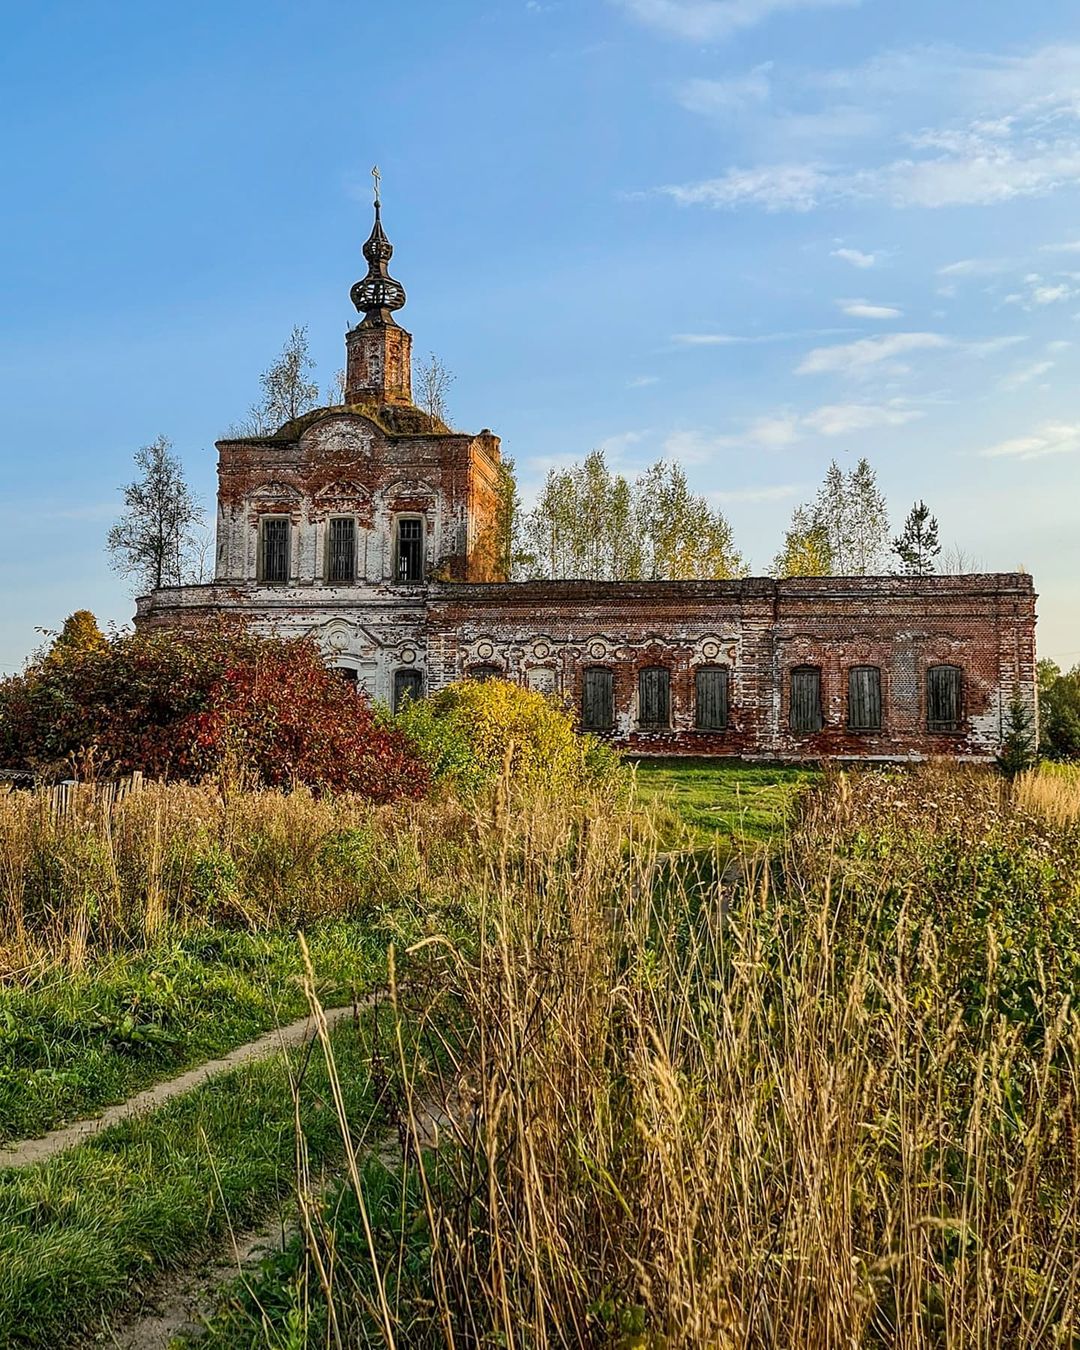 Тревел-блогер @juliaananeva поделилась кадрами из заброшенной церкви, стоящей в селе Ряхово Камешковского района. Это стоит увидеть!